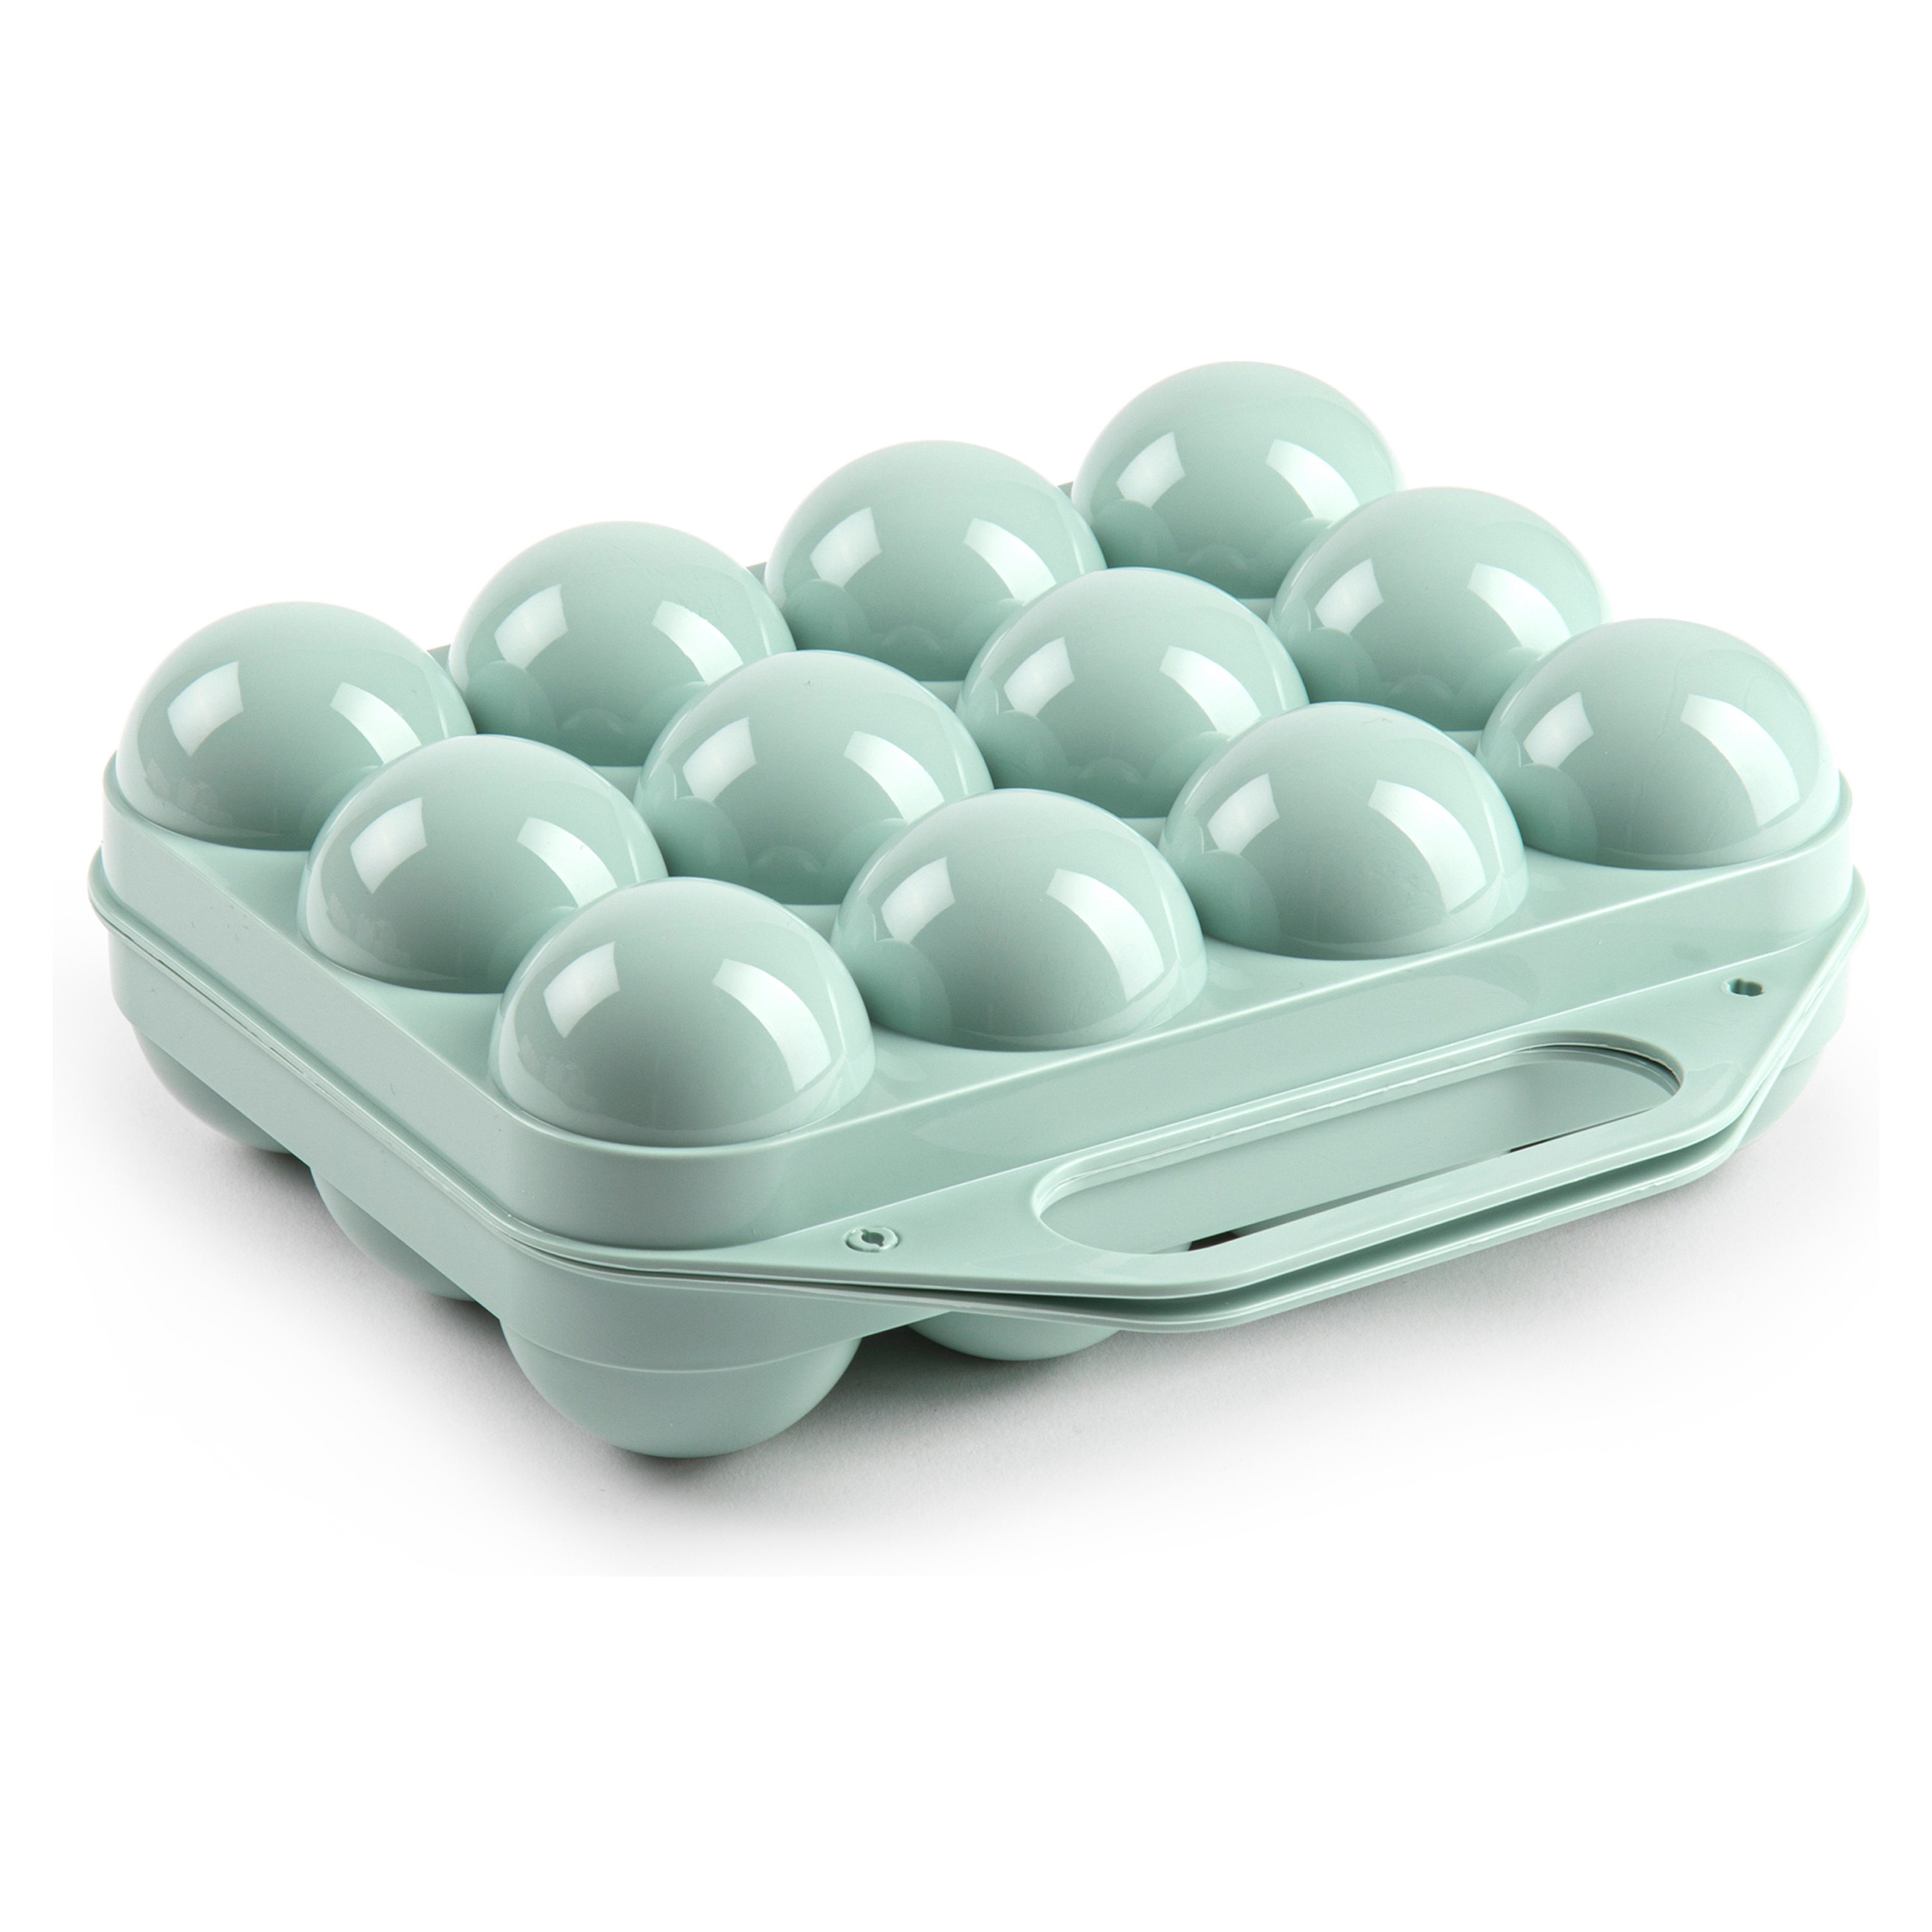 Eierdoos koelkast organizer eierhouder 12 eieren mint groen kunststof 20 x 19 cm